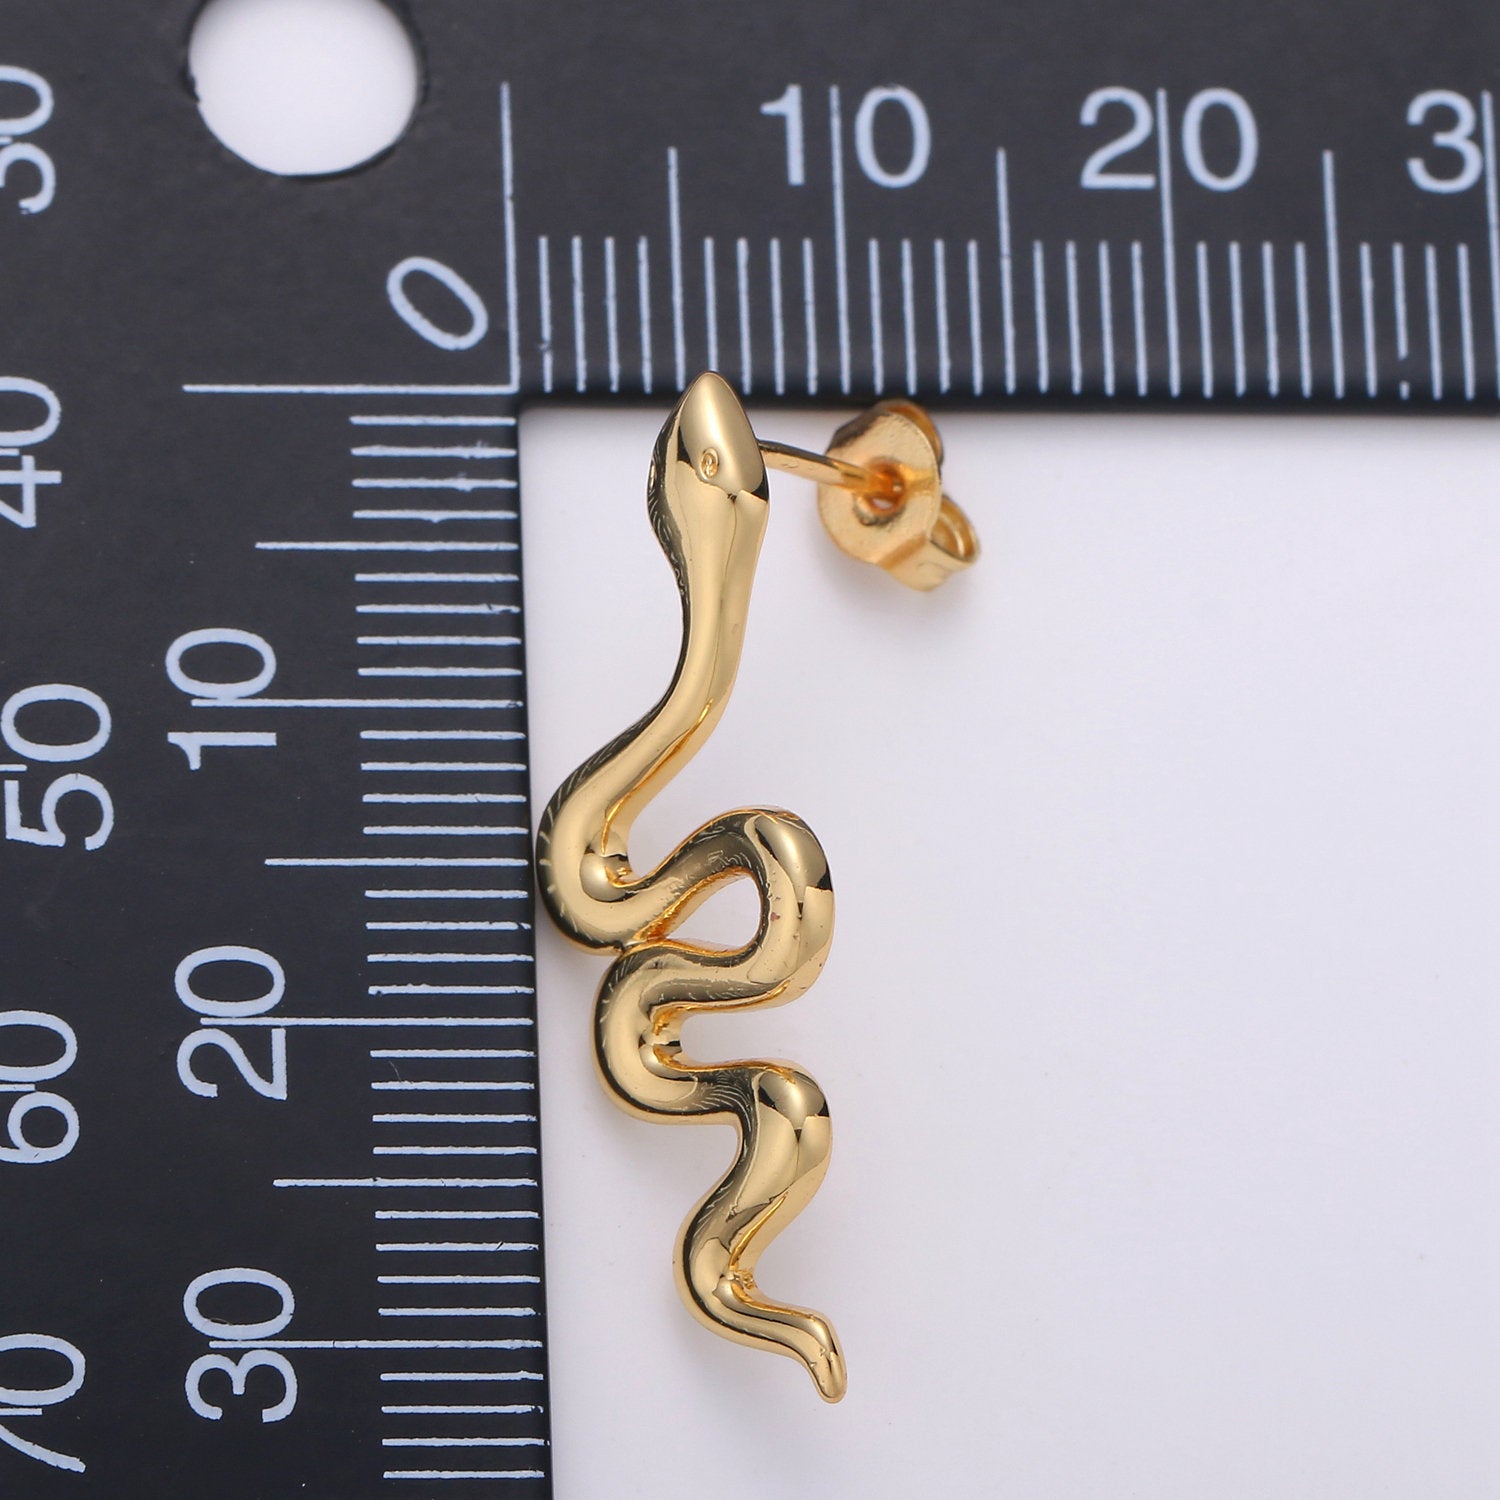 1 pair Gold Snake earrings, snake stud earrings, dainty earrings, Serpent earrings, delicate studs, gold earrings, minimalist earring - DLUXCA